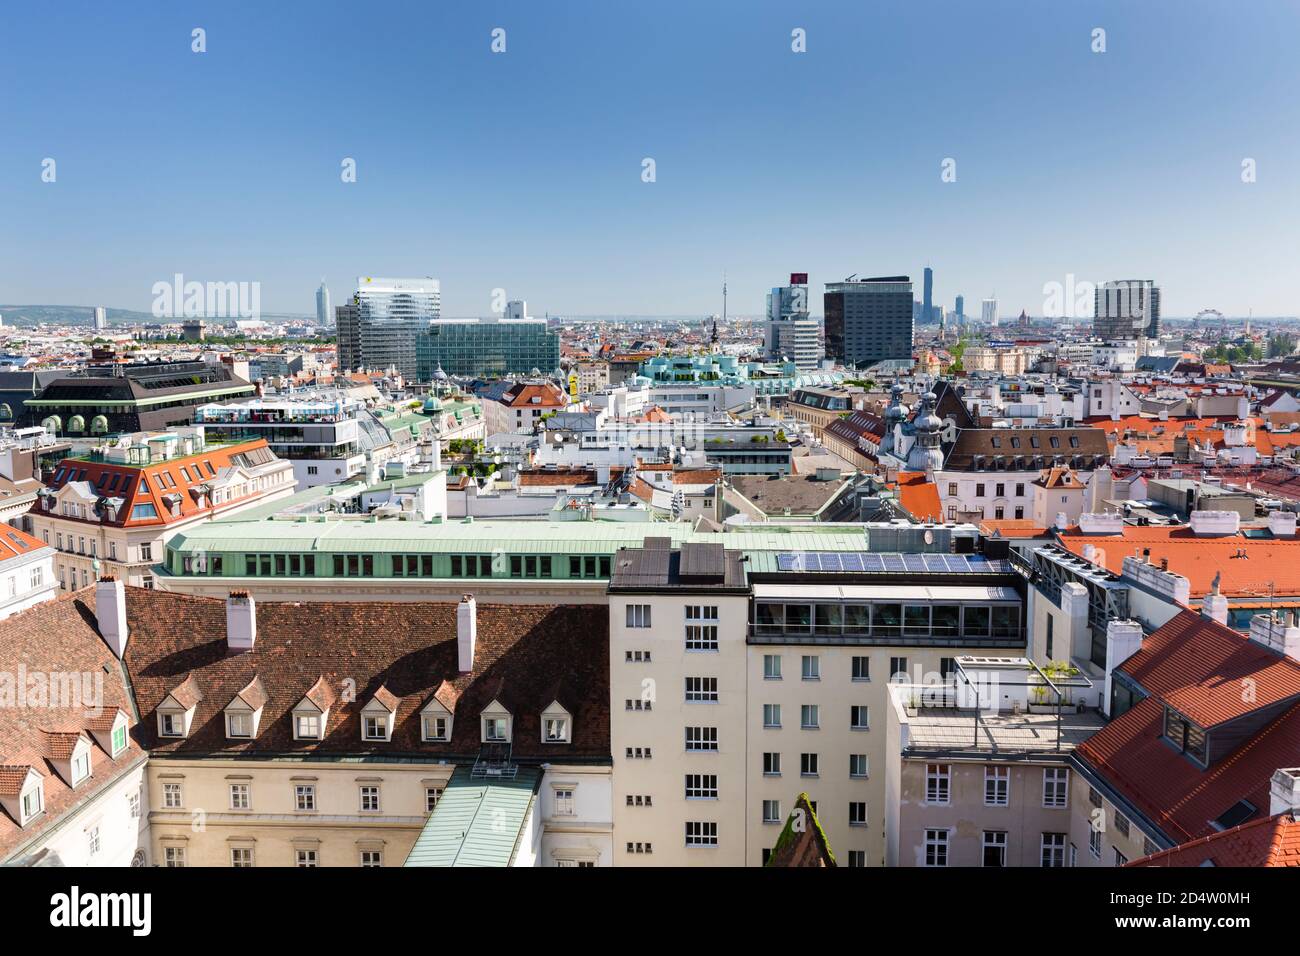 WIEN - 7. MAI: Wien-Blick auf die Donau-Stadt im Hintergrund, Österreich am 7. Mai 2018 Stockfoto